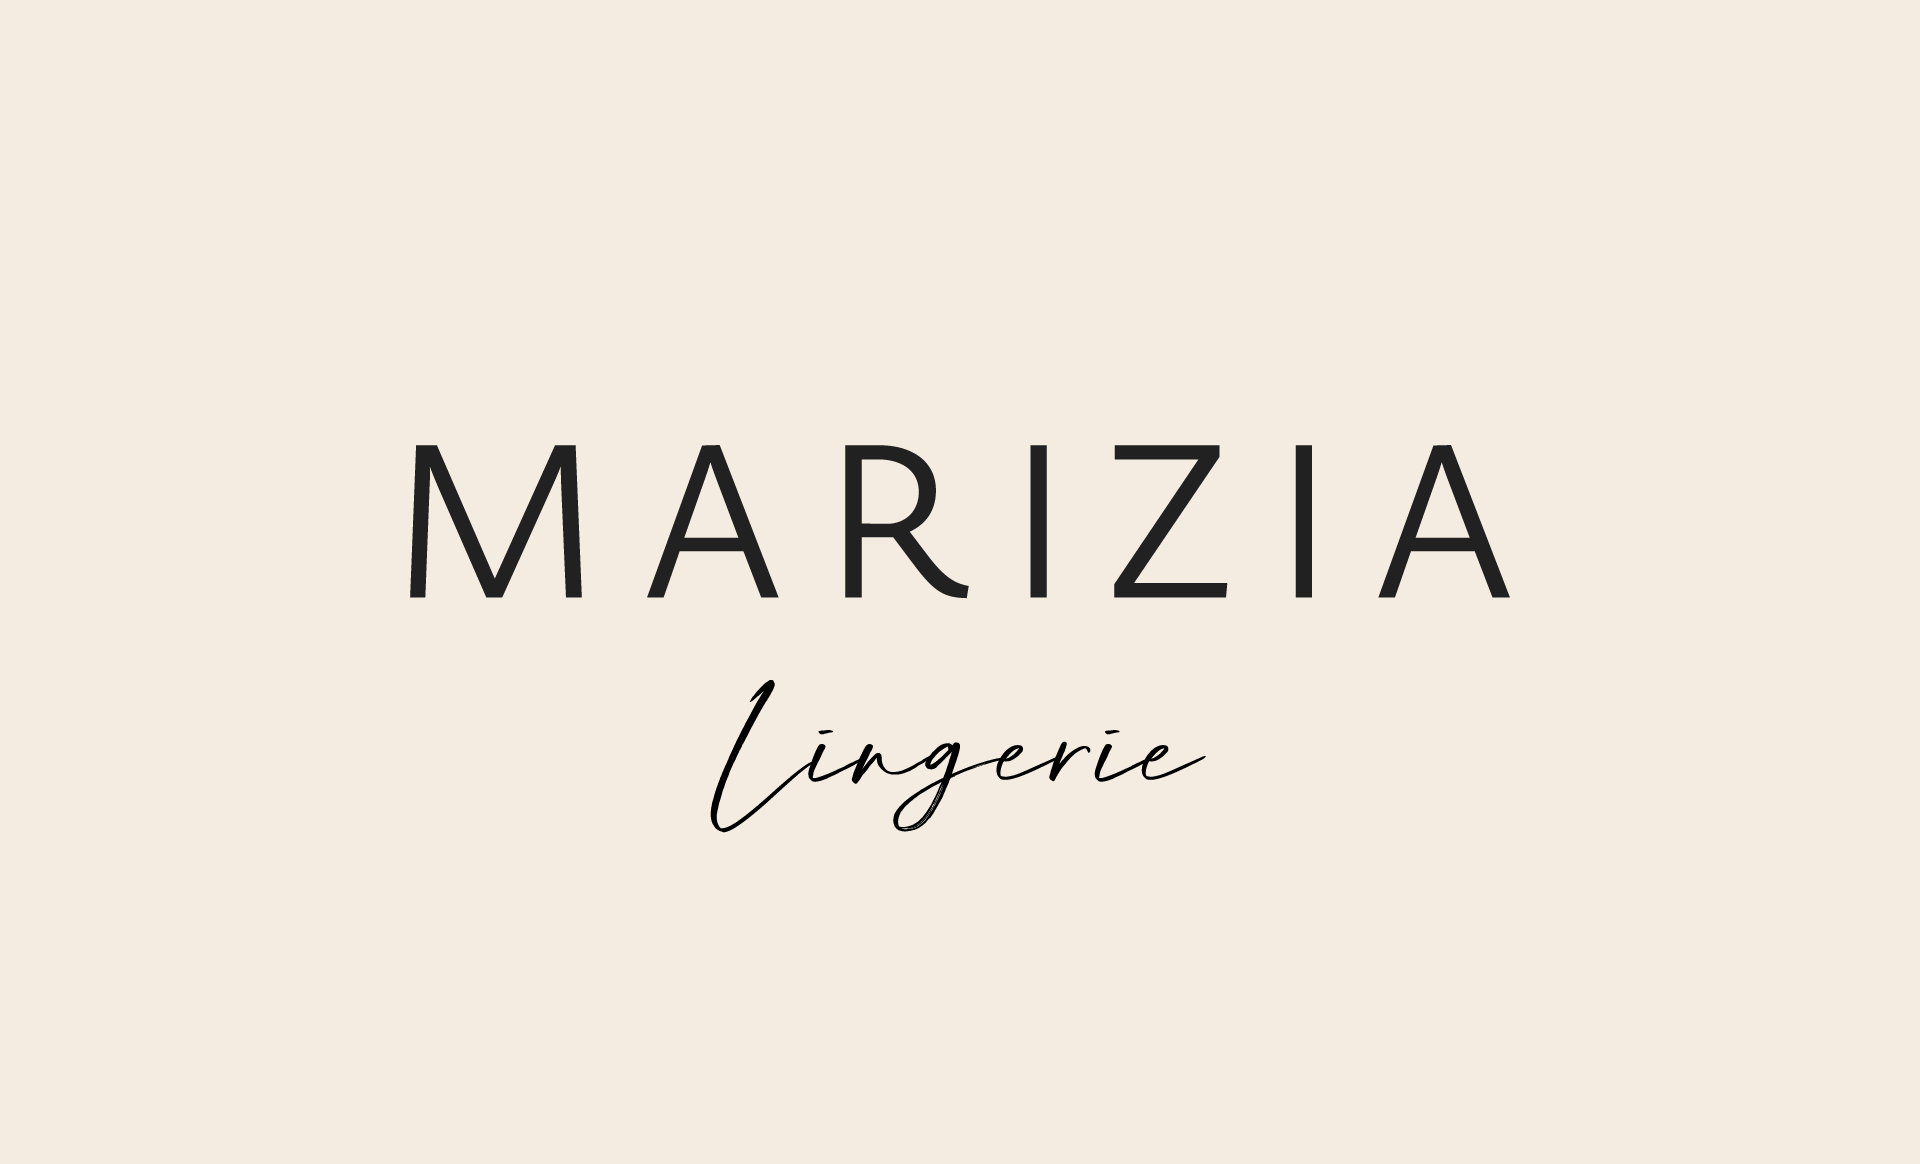 Marizia-logo3